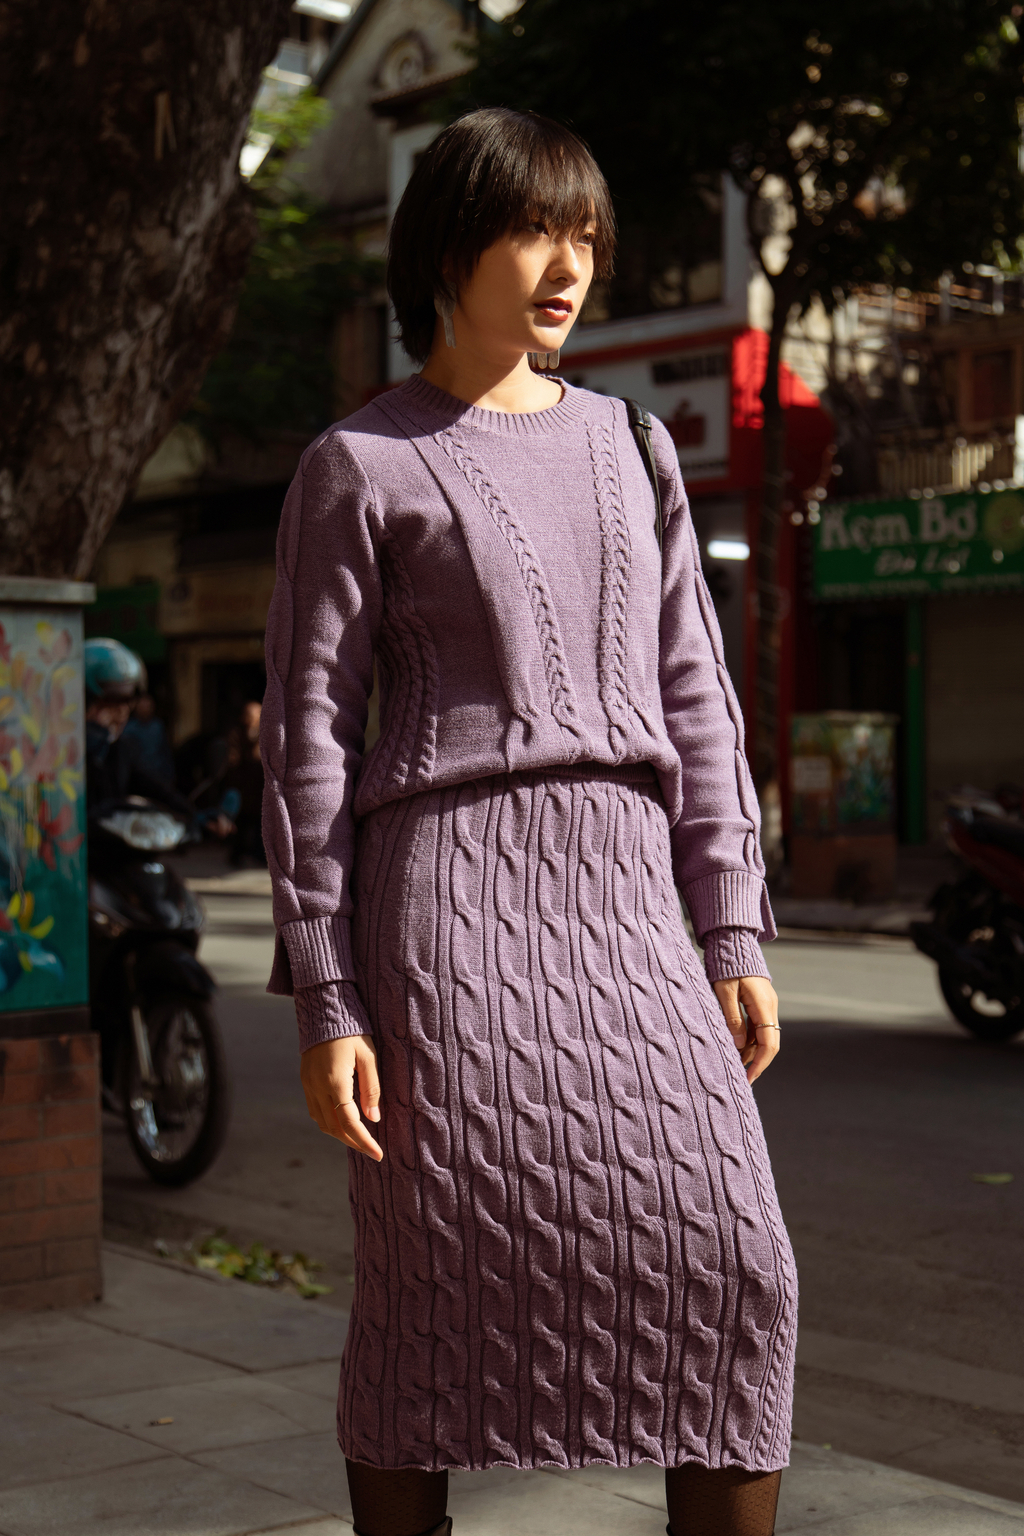 Người mẫu Hồ Thu Anh diện váy dệt kim màu tím ấn tượng xuống phố. Sự kết hợp giữa váy hoa, áo khoác màu be cũng mang đến diện mạo thu hút cho cô. Một số người mẫu có tiếng ở Hà Nội cũng có mặt để chia vui với NTK Đỗ Mạnh Cường.